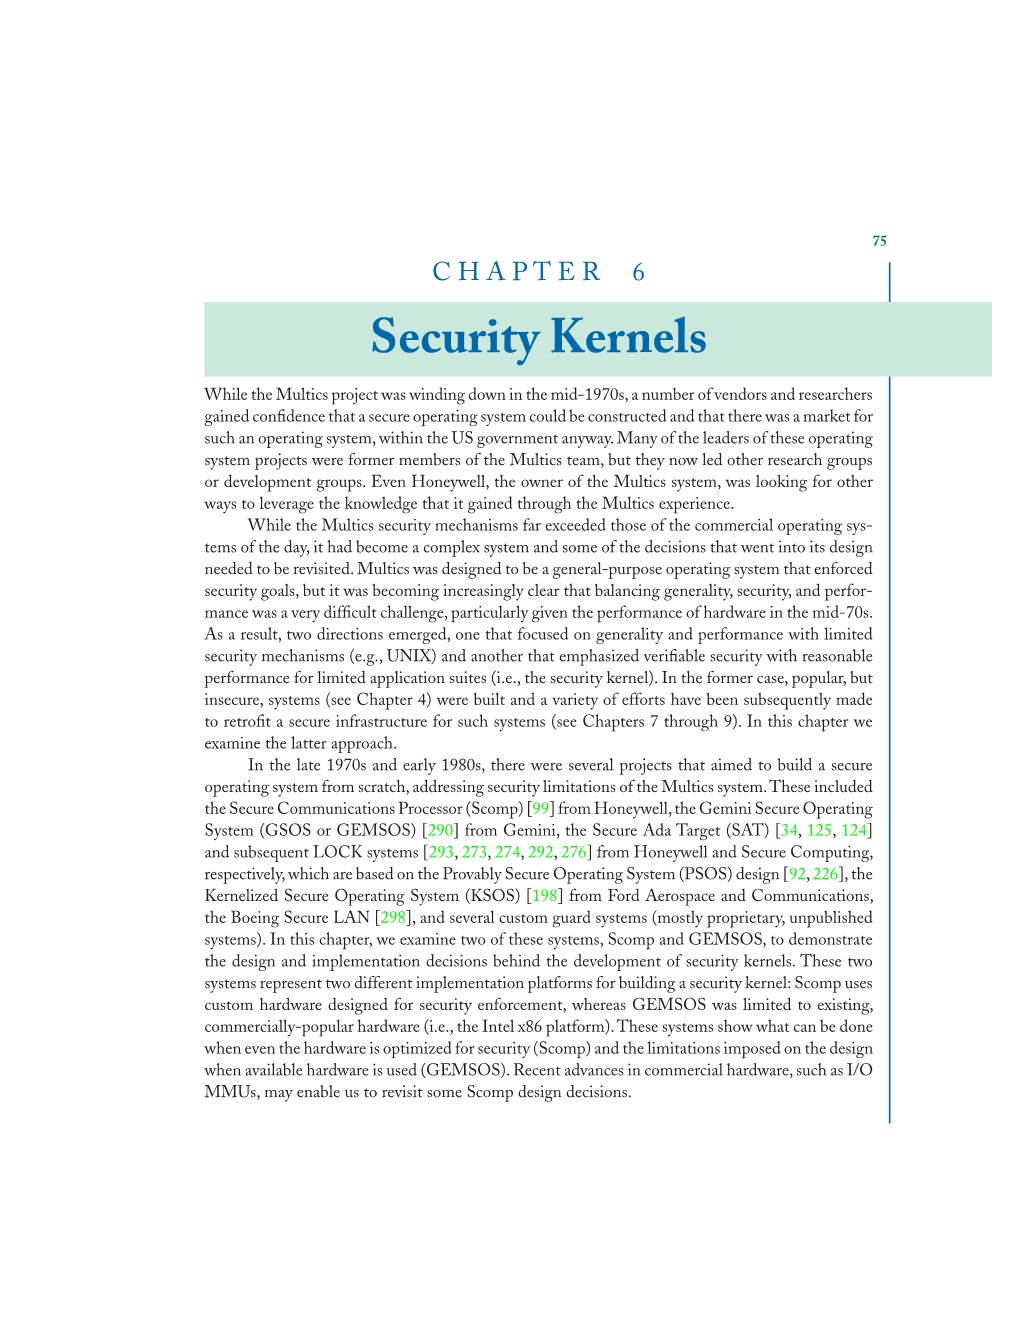 Security Kernels